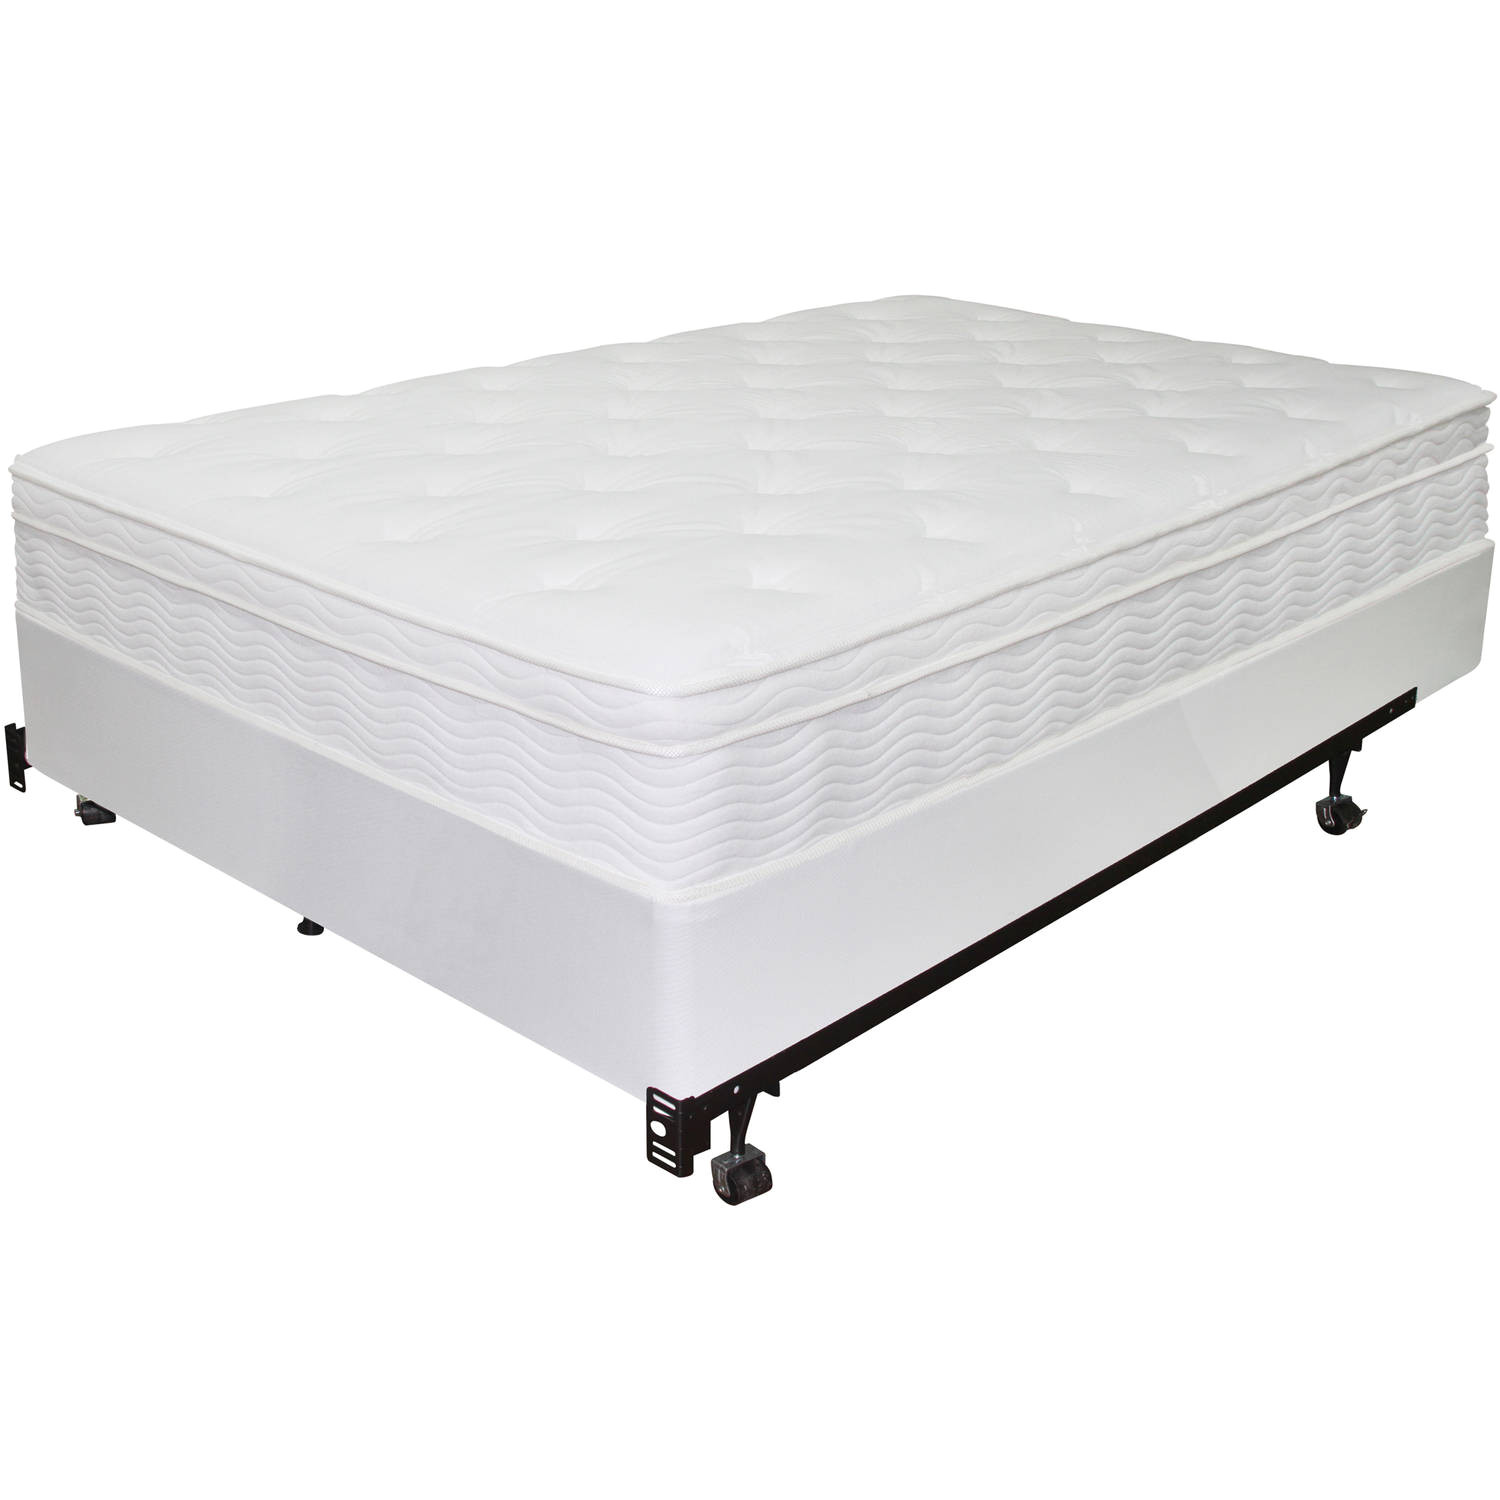 queen mattress and boxspring set twin mattress and box spring sears outlet mattress